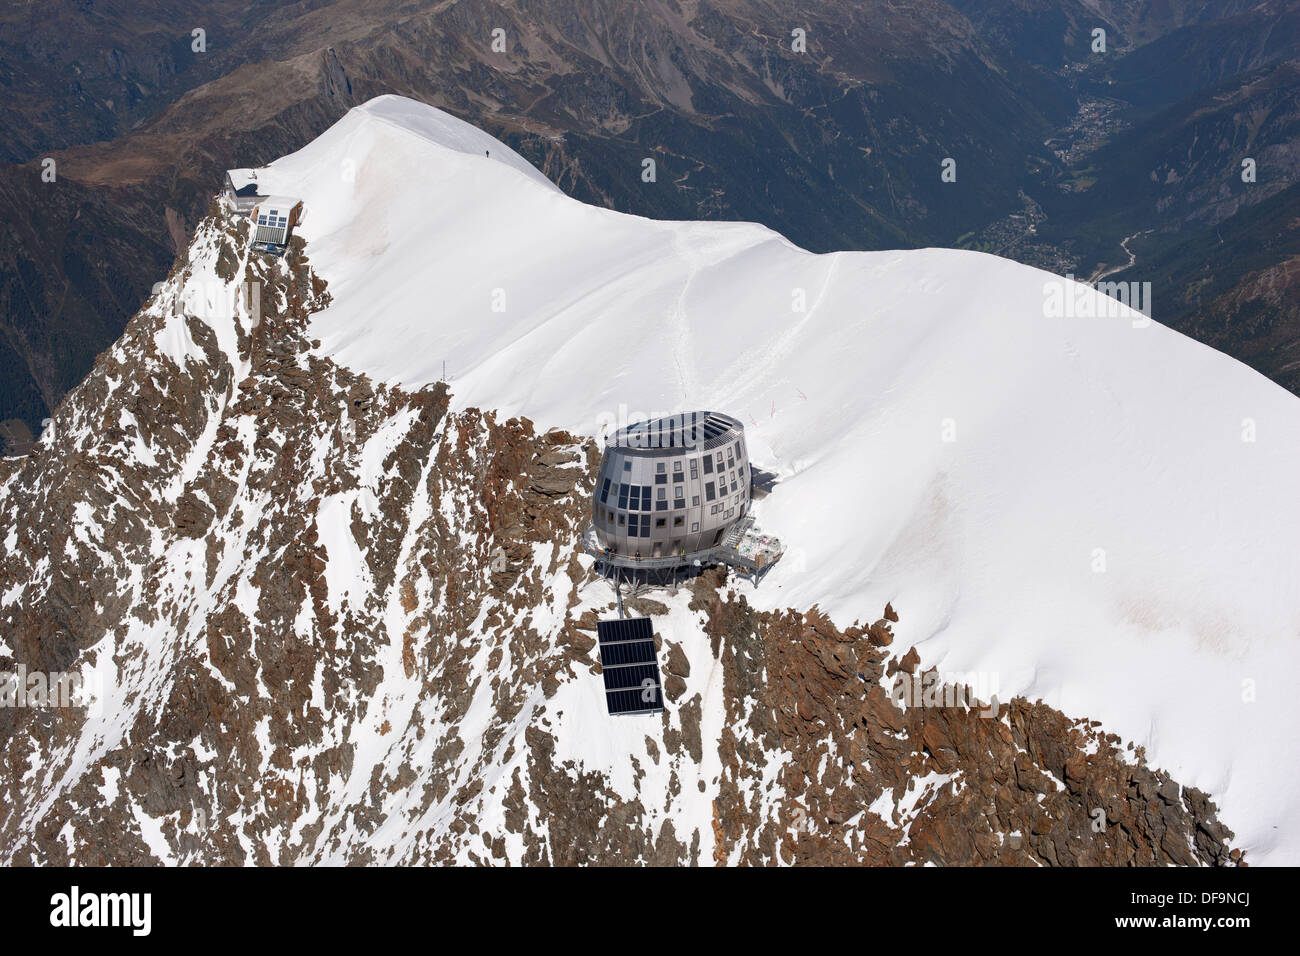 LUFTAUFNAHME. Aiguille du Goûter (Höhe: 3863m) mit der neuen Berghütte am Rand der Klippe. Saint-Gervais, Auvergne-Rhône-Alpes, Frankreich. Stockfoto